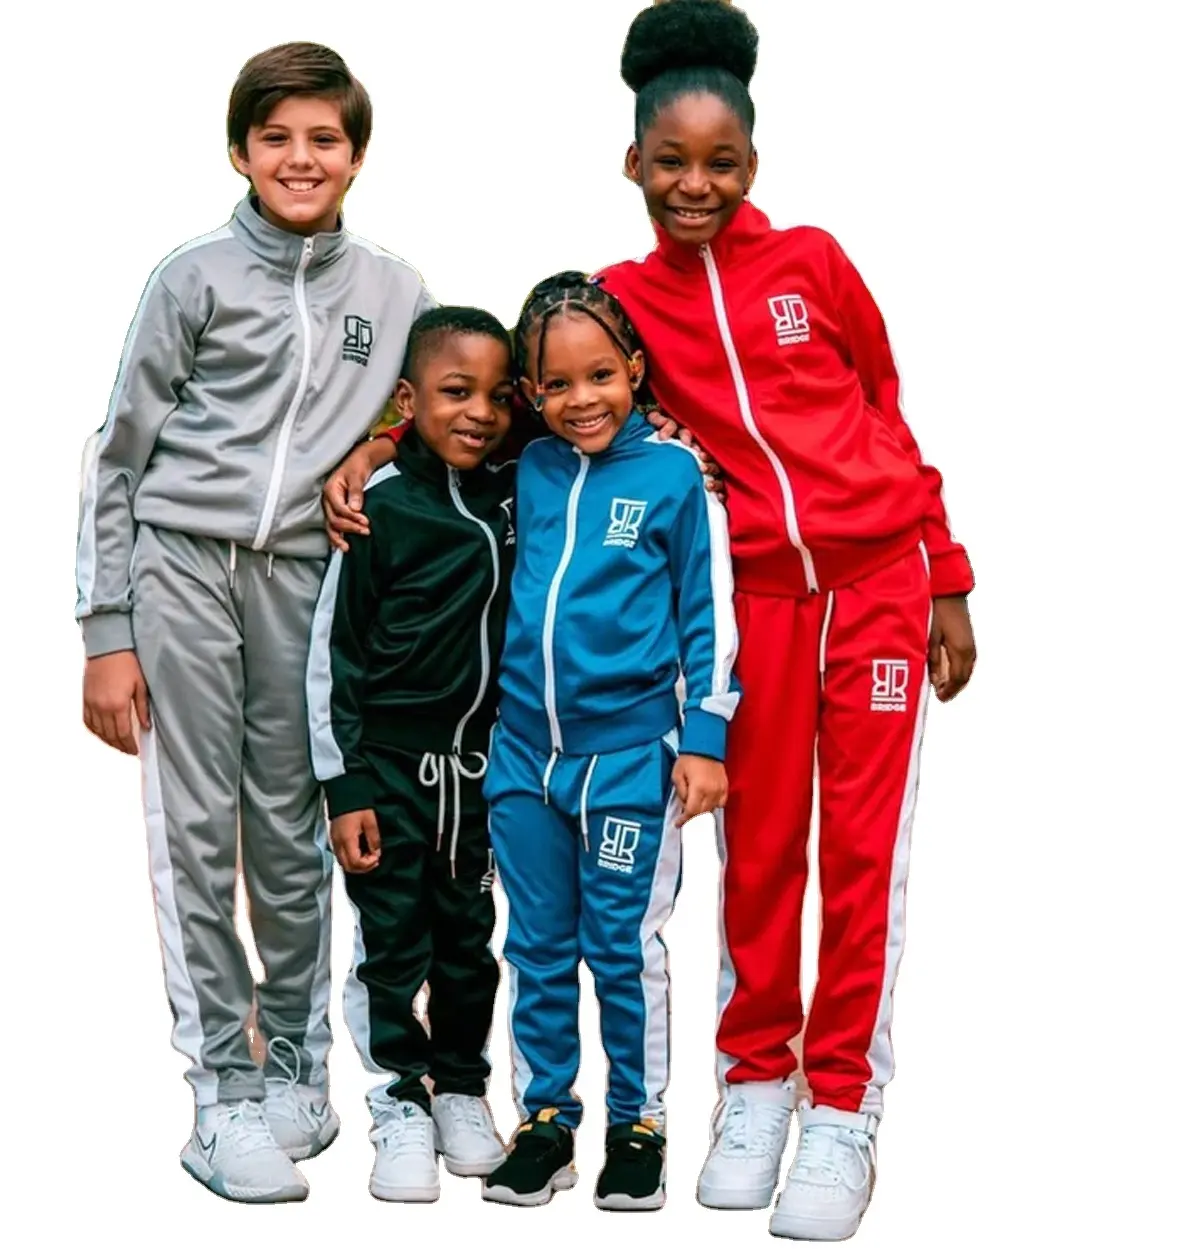 Survêtement en tissu de coton/nouveau survêtement complet pour hommes Jogging/enfants filles garçons survêtement uni à capuche fabriqué par Antom entreprises